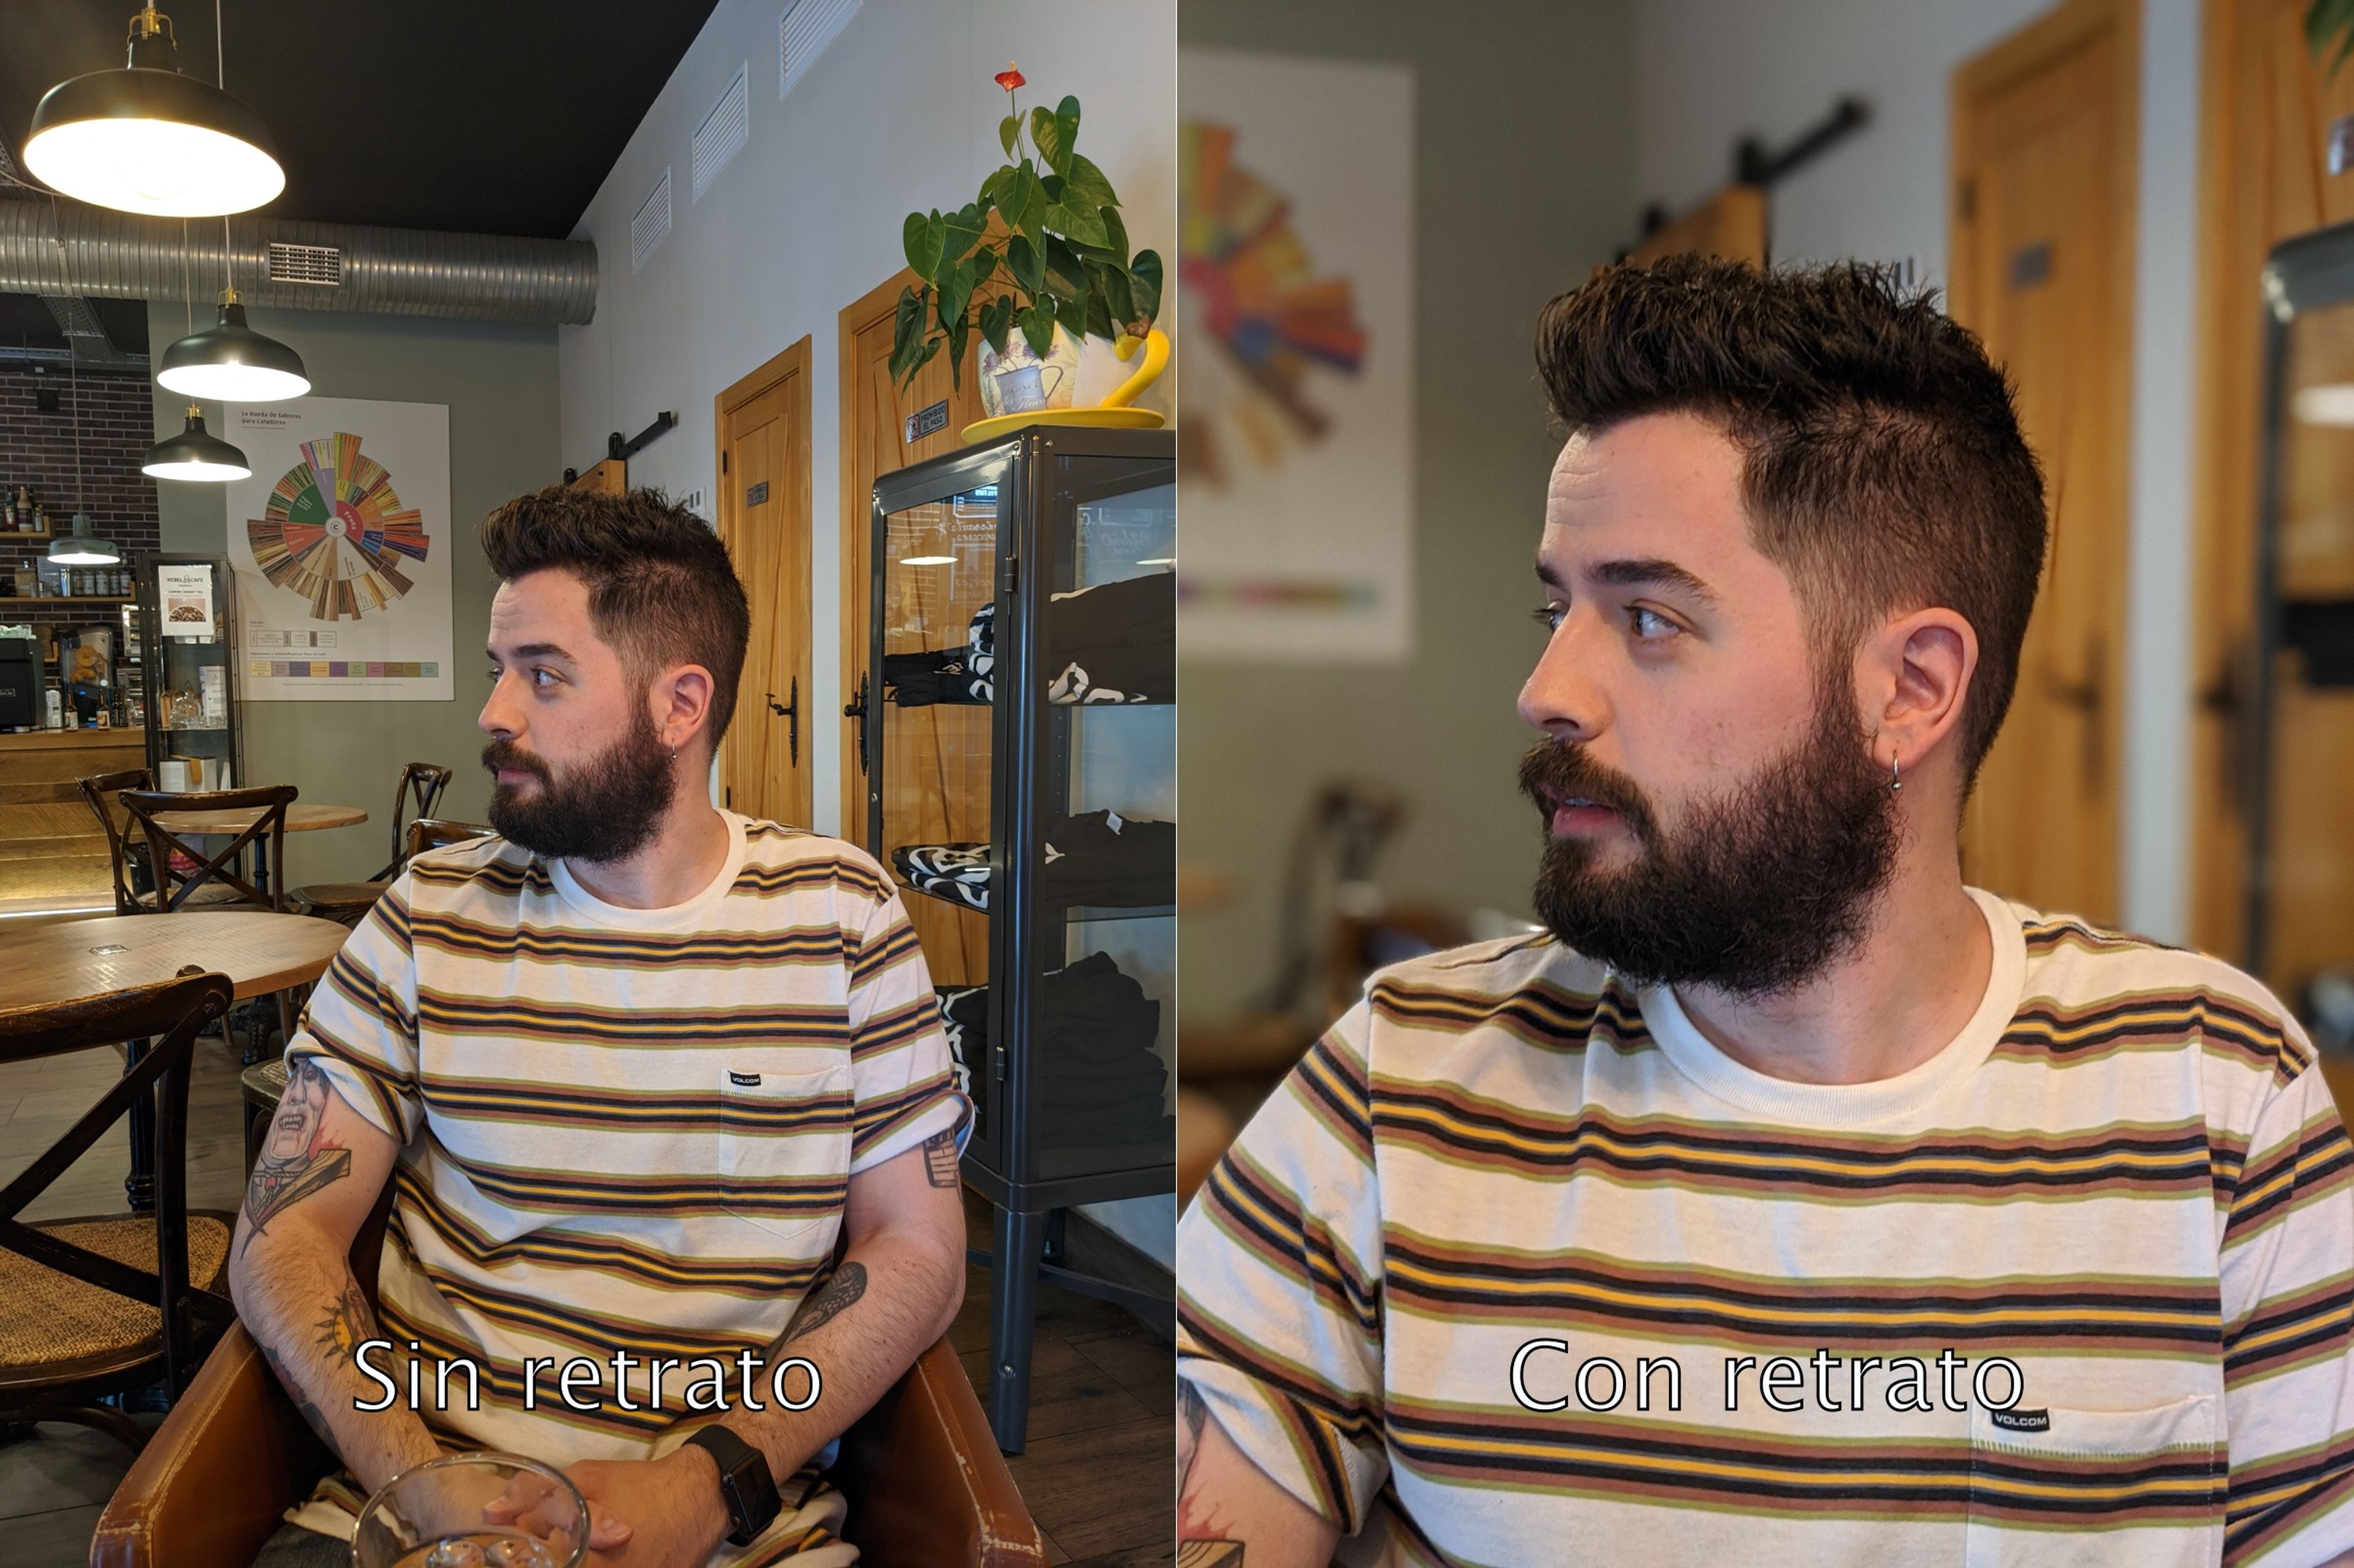 Fíjate en lo bien que hace el recorte del pelo en la foto de la derecha.